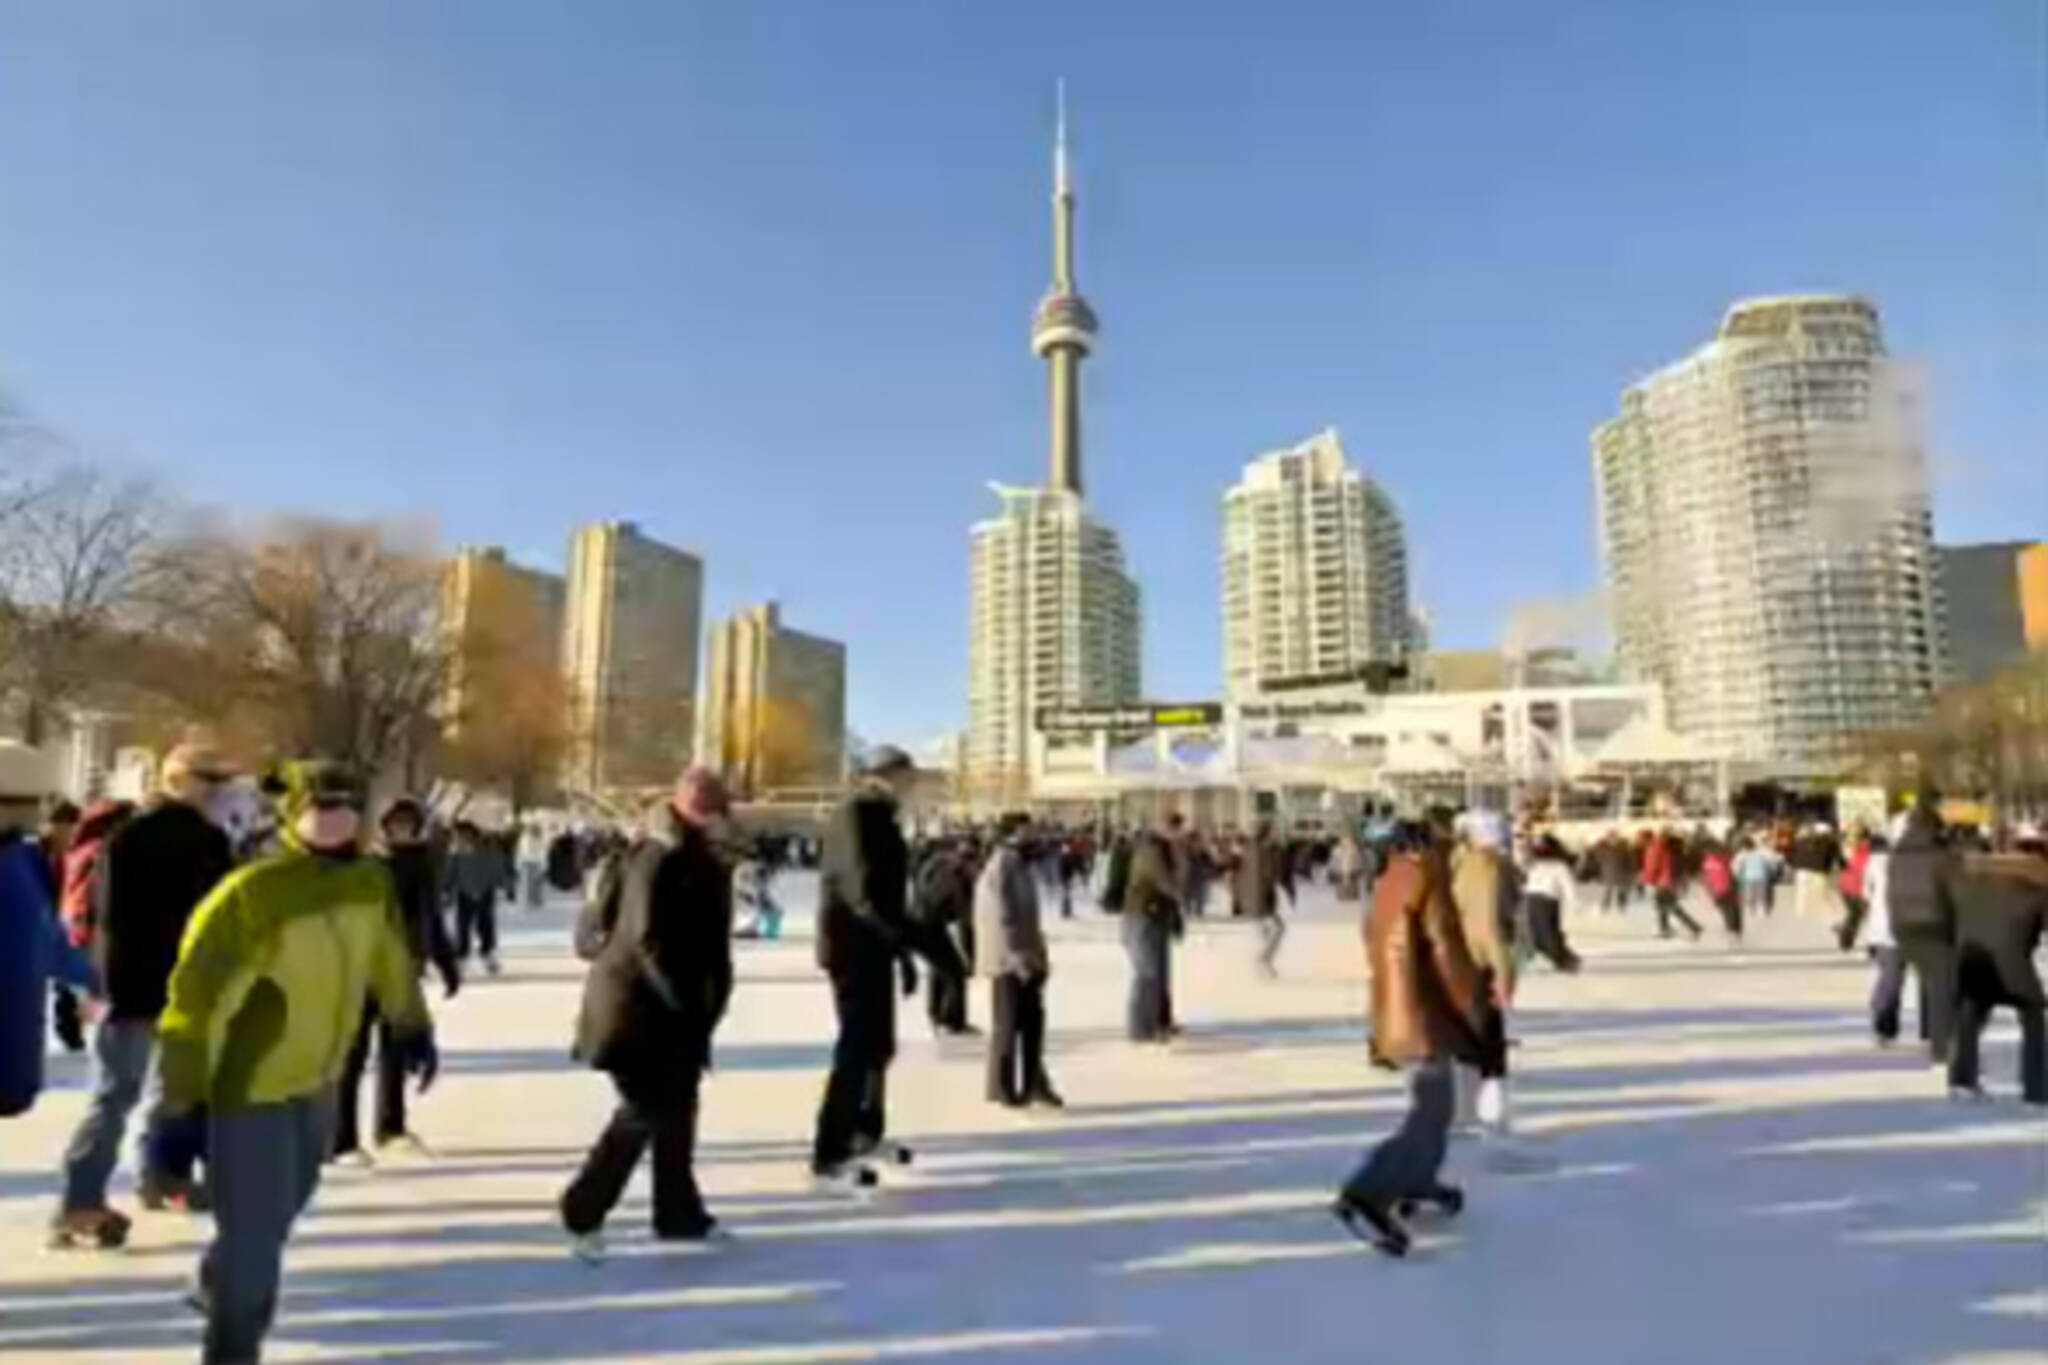 Skating in Toronto